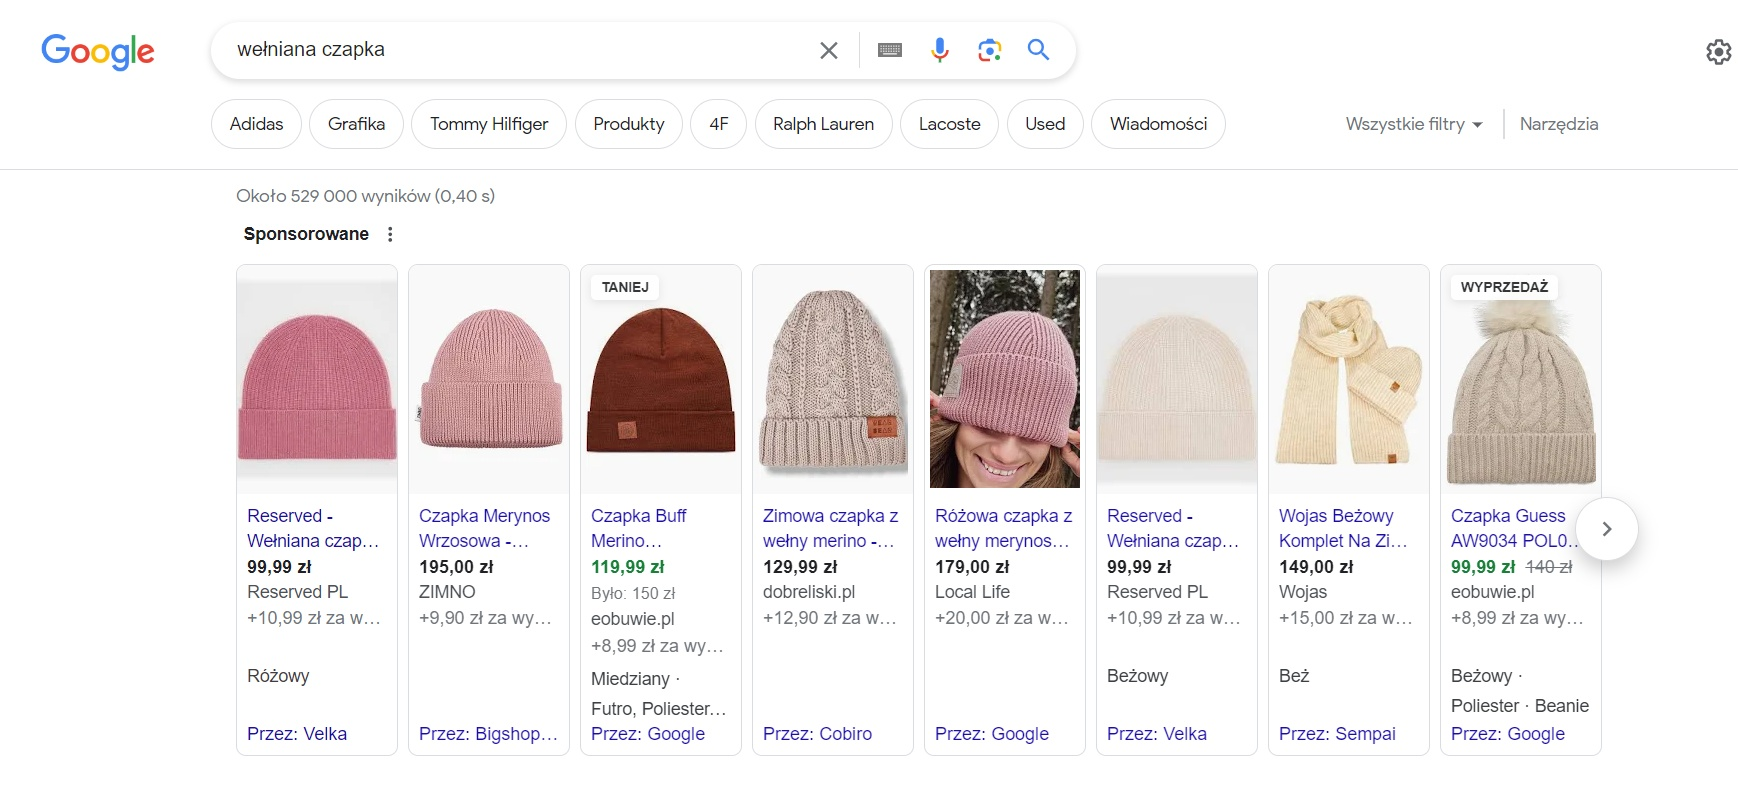 Przykłady reklam w wyszukiwarce Google